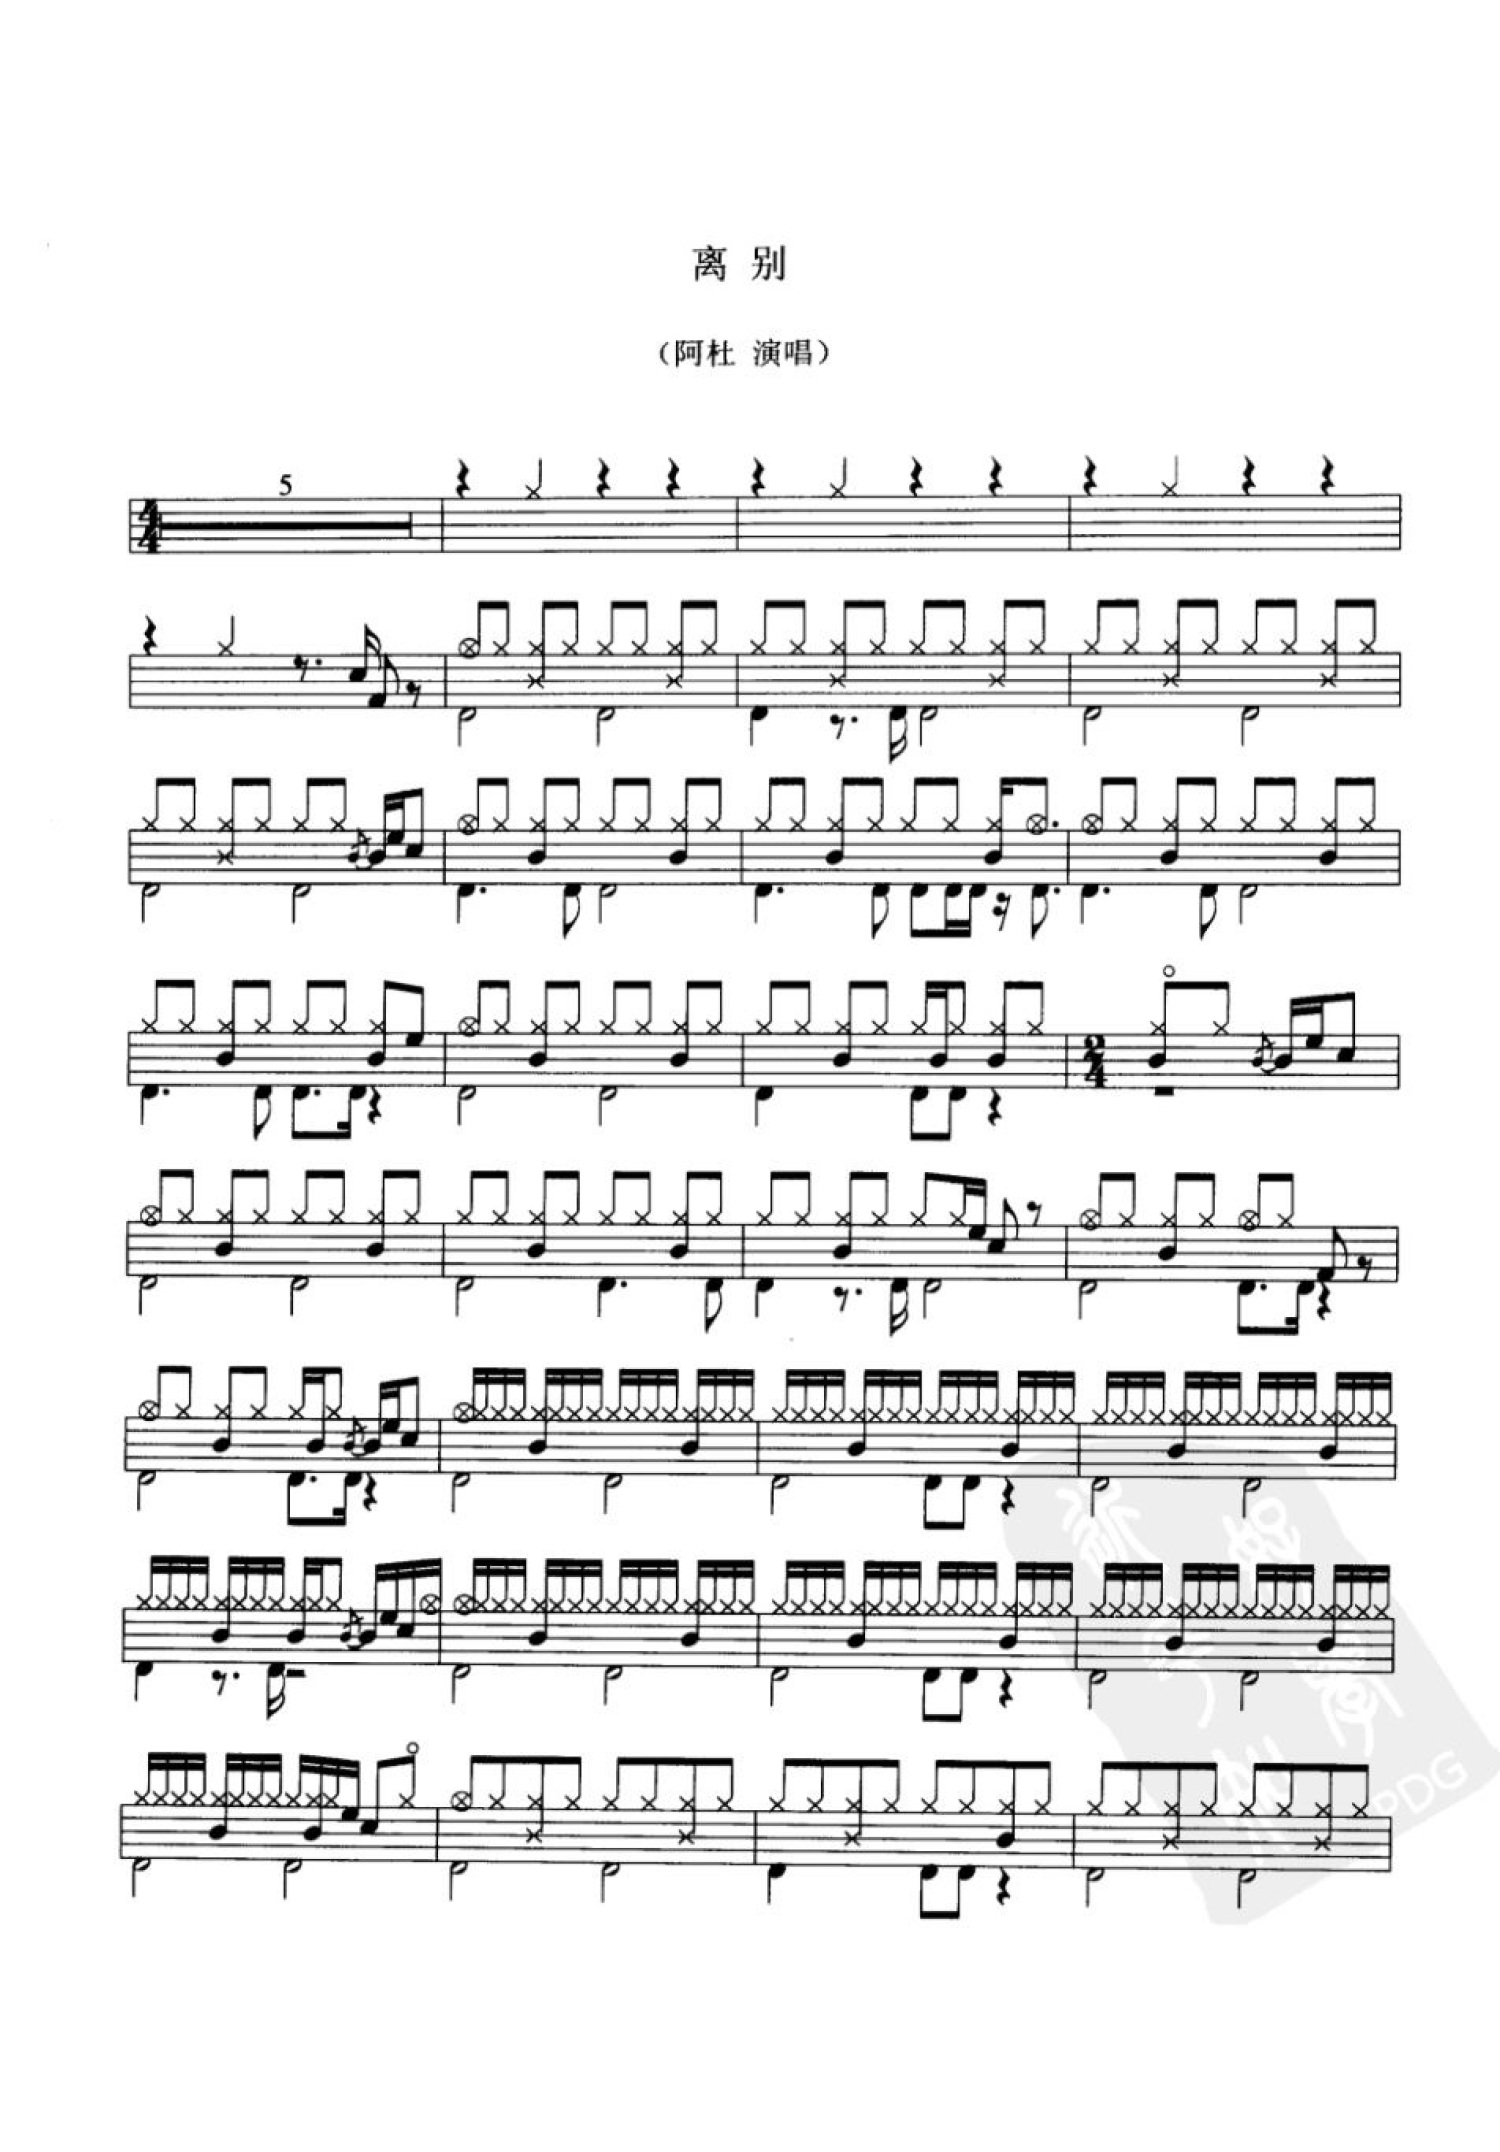 《离别》副歌扫弦版吉他谱 - 阿杜C调六线谱 - 中级高清图片谱 - 拍子4/4拍 - 易谱库